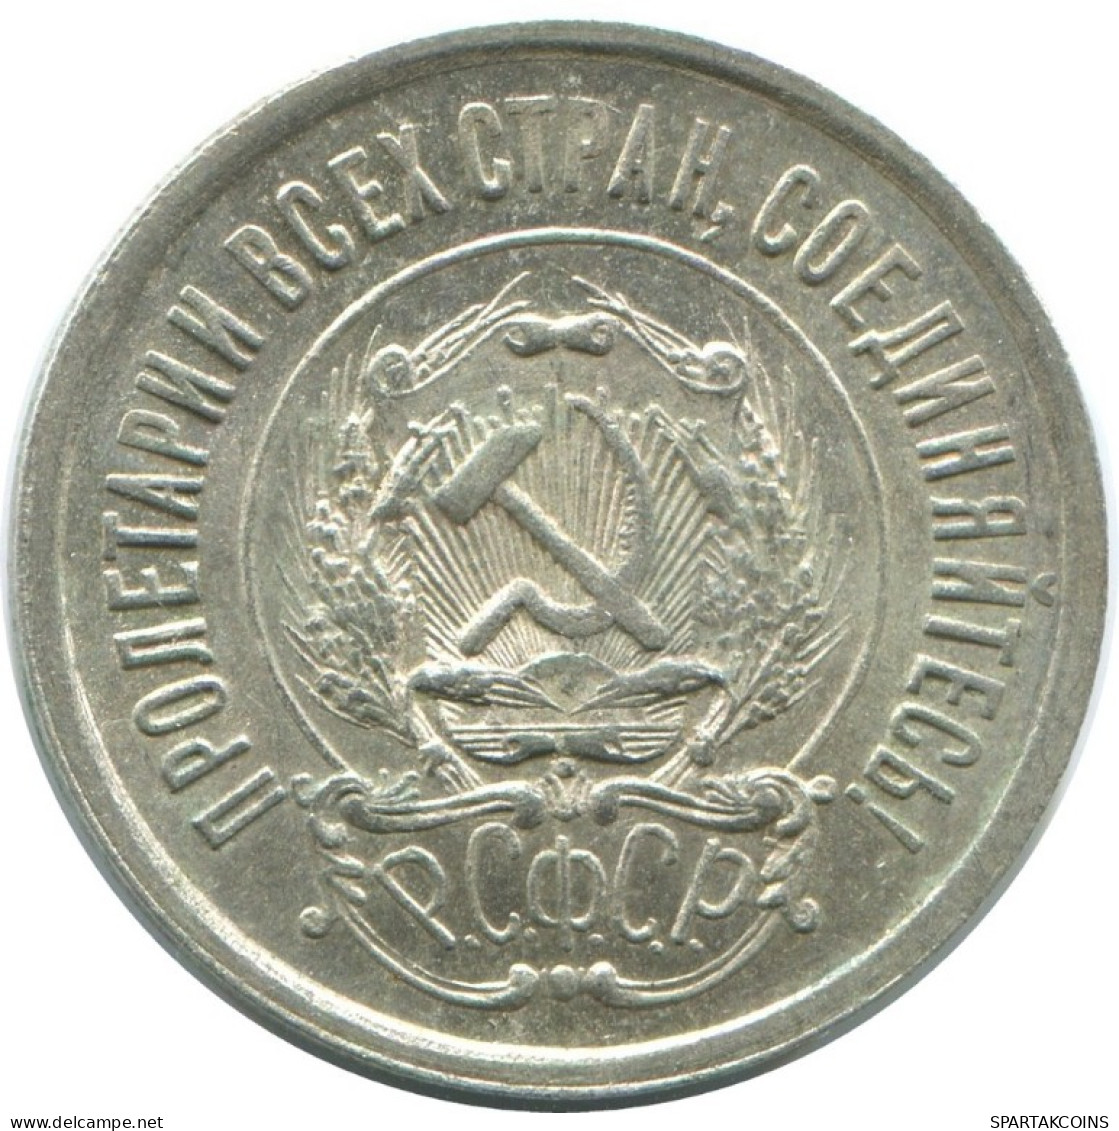 20 KOPEKS 1923 RUSSLAND RUSSIA RSFSR SILBER Münze HIGH GRADE #AF636.D.A - Rusia